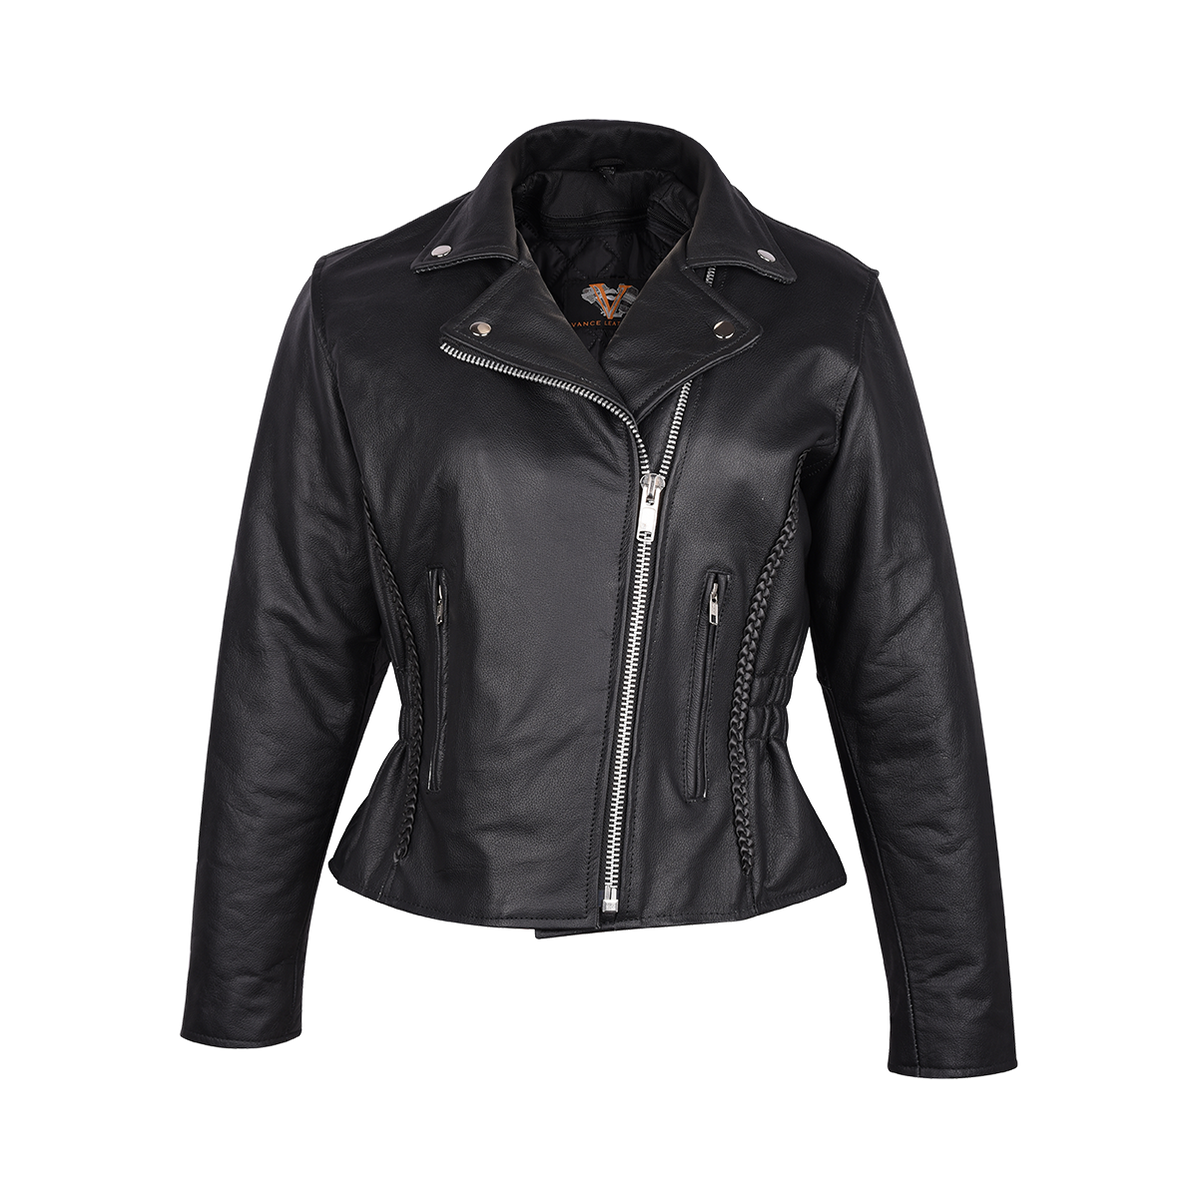 Vance Leather Ladies Premium Cowhide Braid and Stud Motorcycle Leather ...